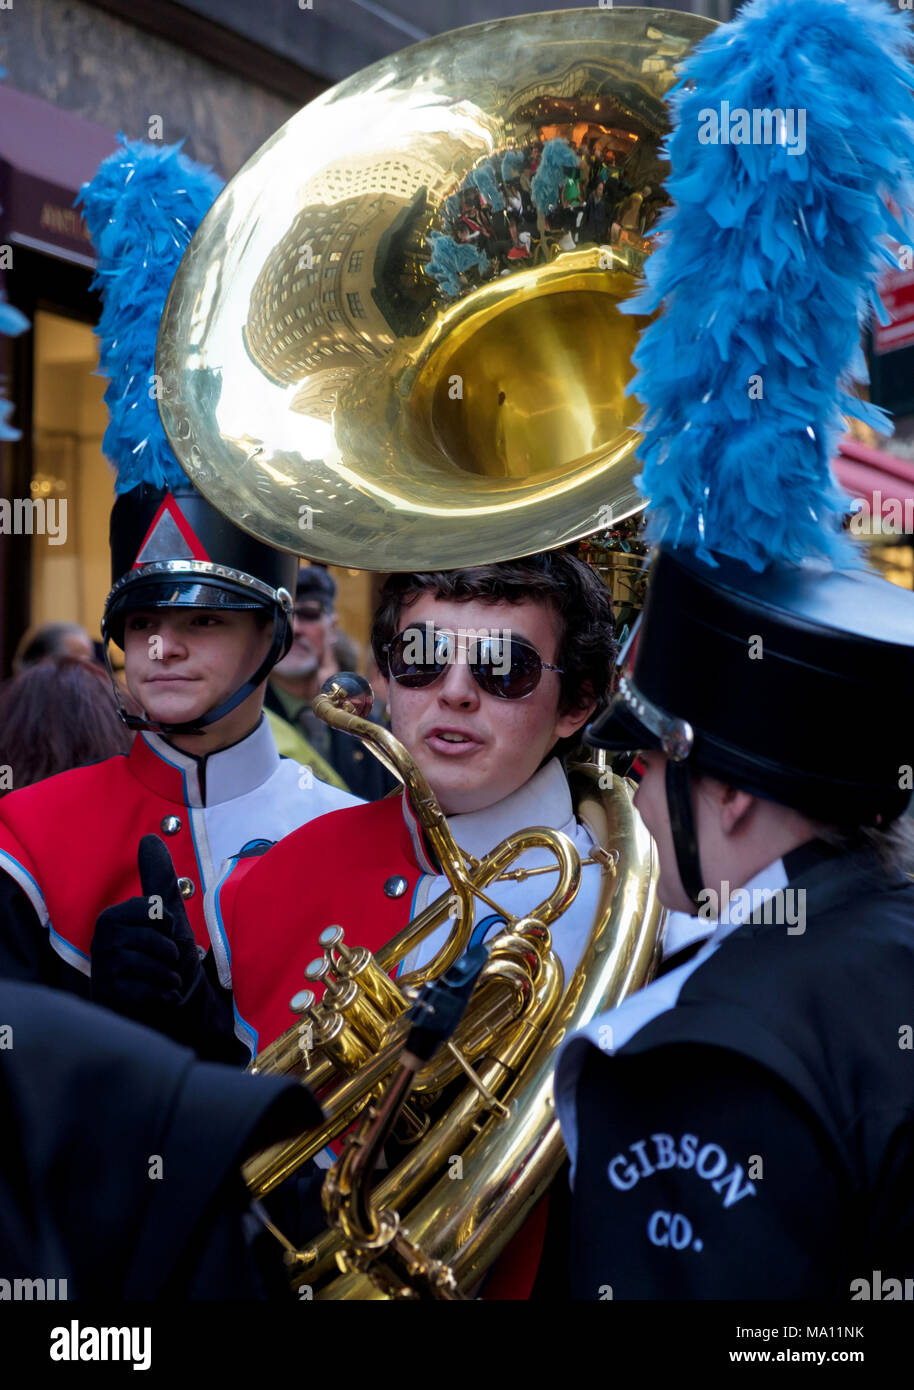 Chico con tuba, con gafas de sol, hablando con otros miembros de la banda el Desfile del de San Patricio en Nueva York, Marching Band uniformes Fotografía de stock -